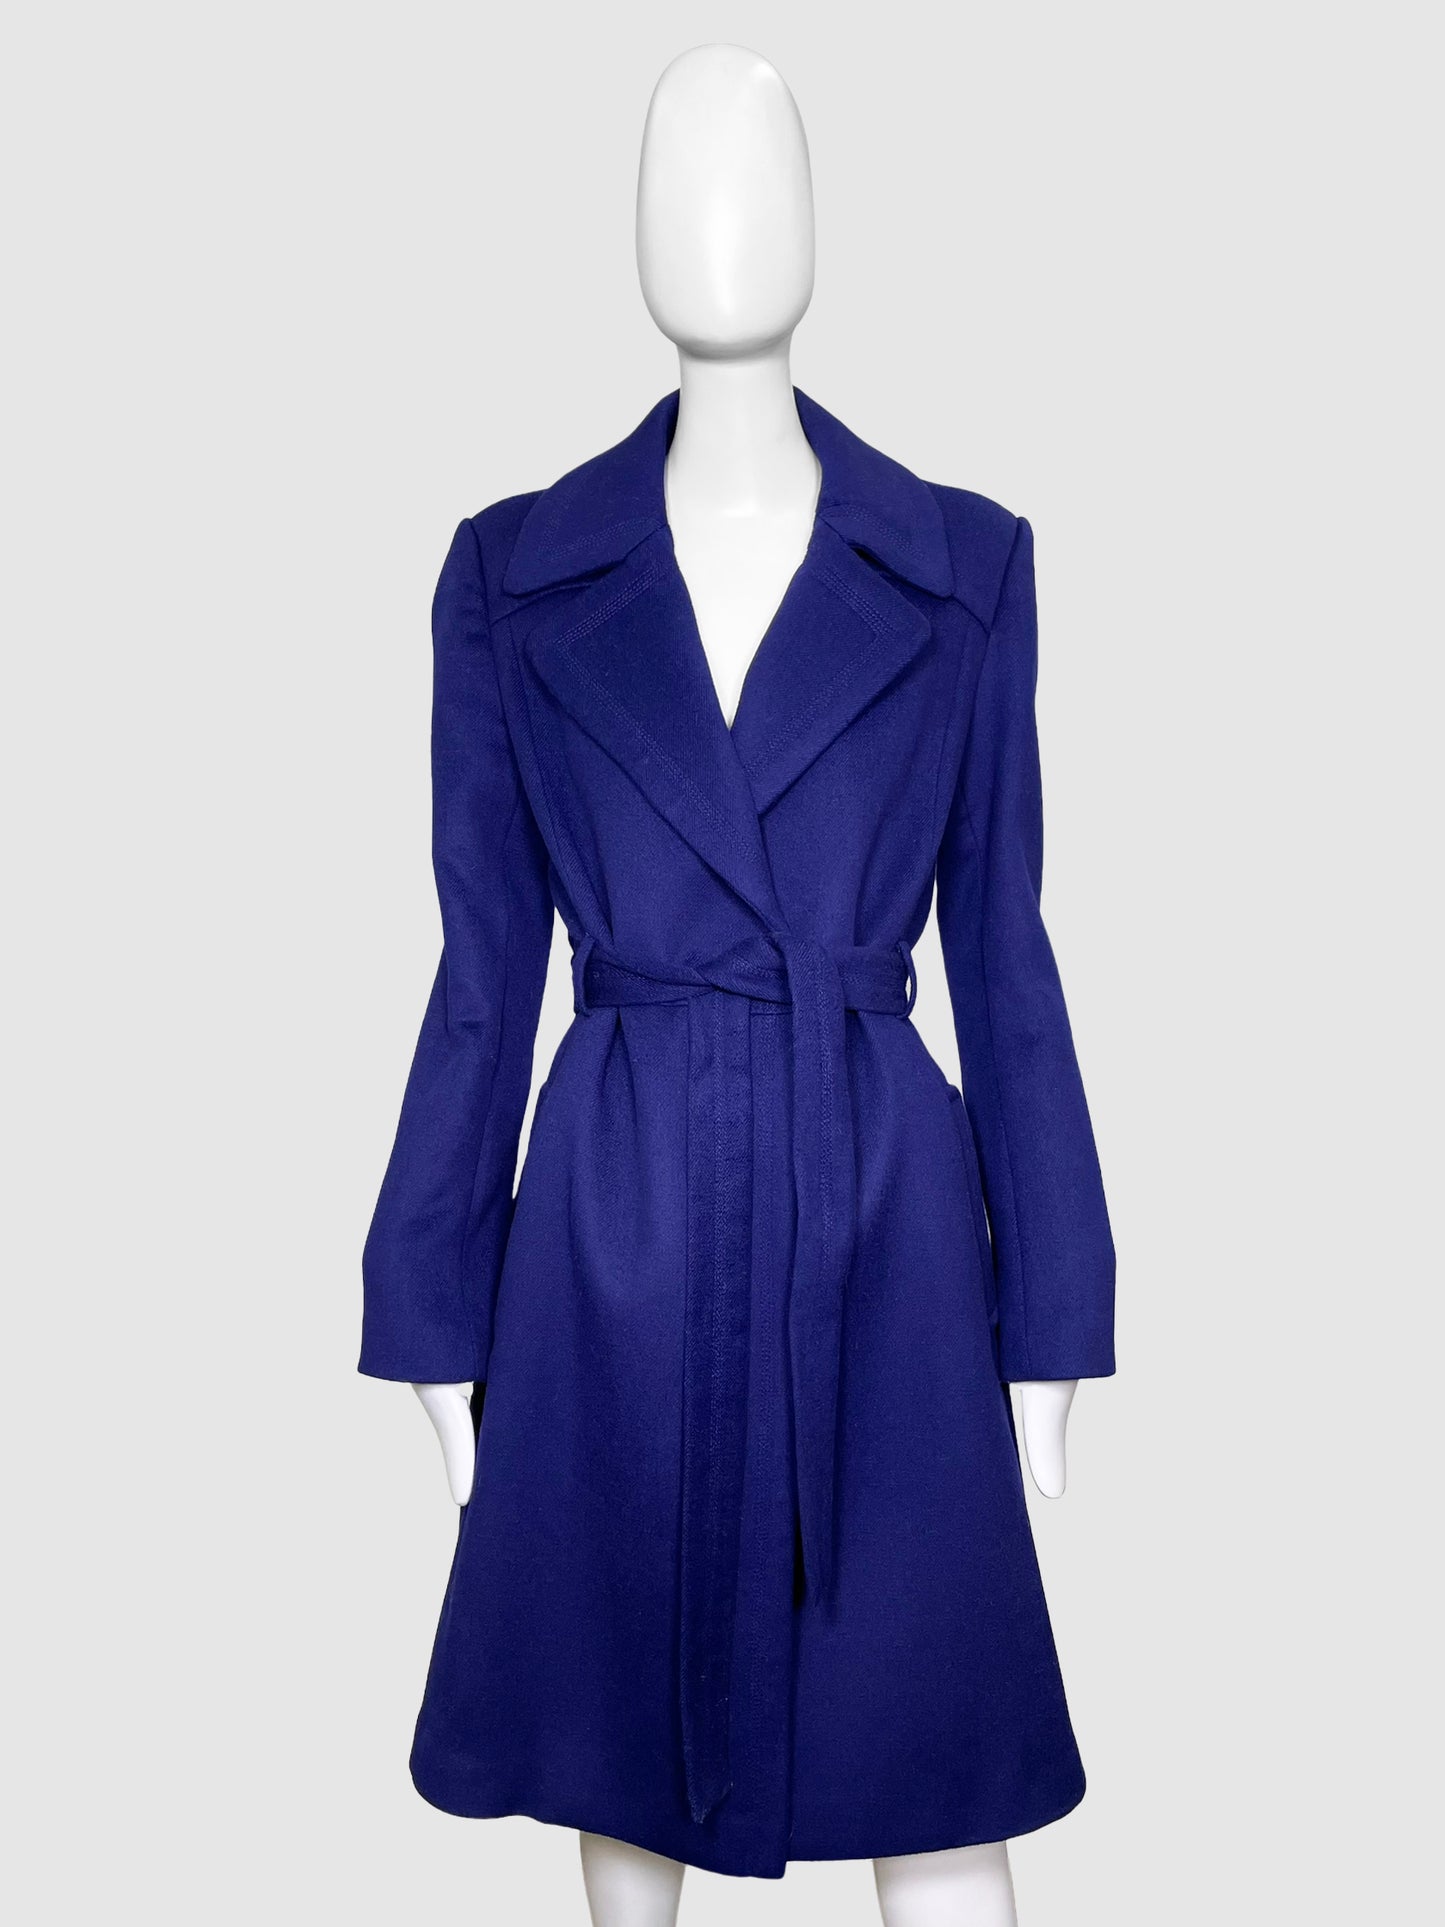 Diane Von Furstenberg Belted Wool Blend Coat - Size 12